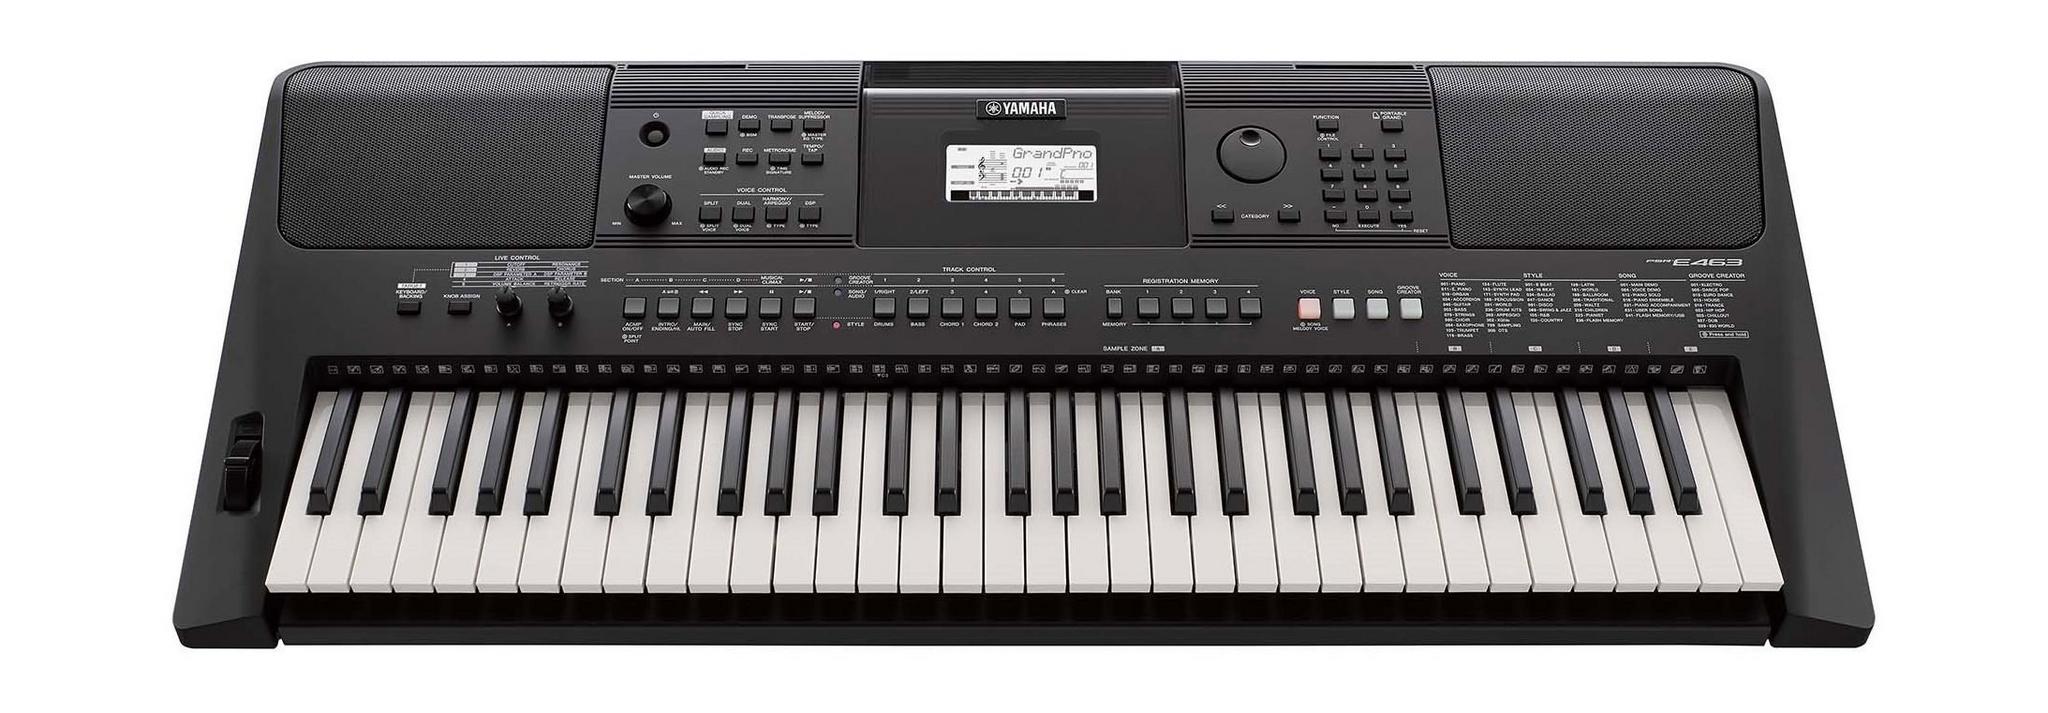 لوحة المفاتيح الموسيقية ٦١ مفتاح من ياماها - PSR-E463